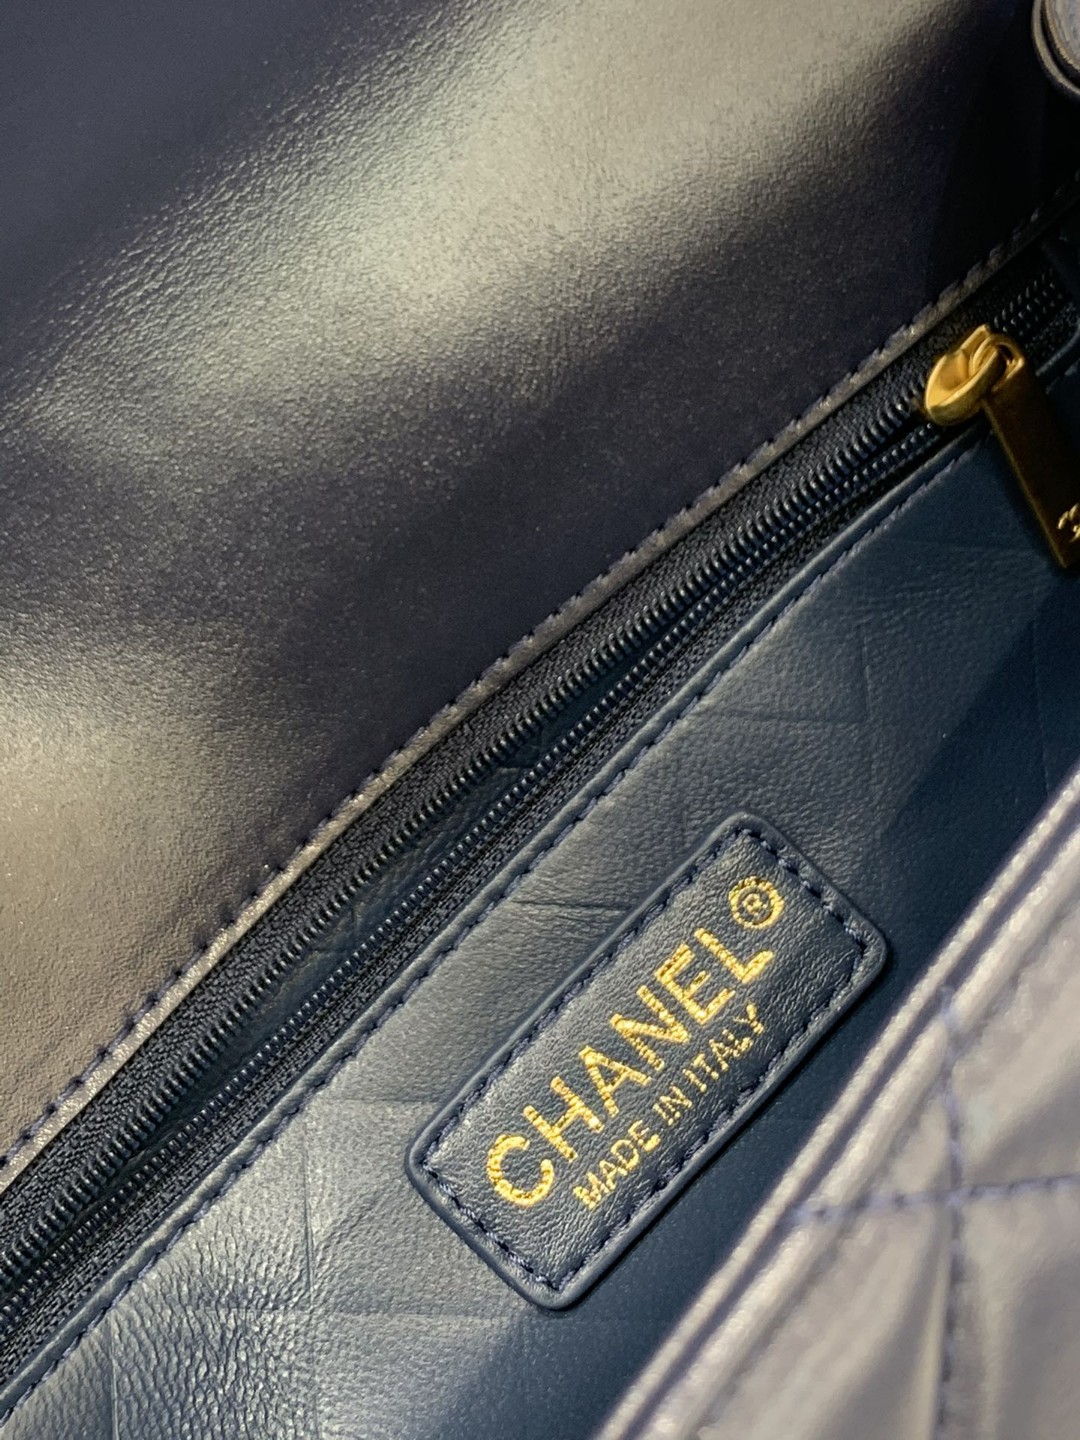 Chanel 香奈儿 秋冬新款 复古戴妃包  光面牛皮 搭配复古雕花的五金 23-7-14cm